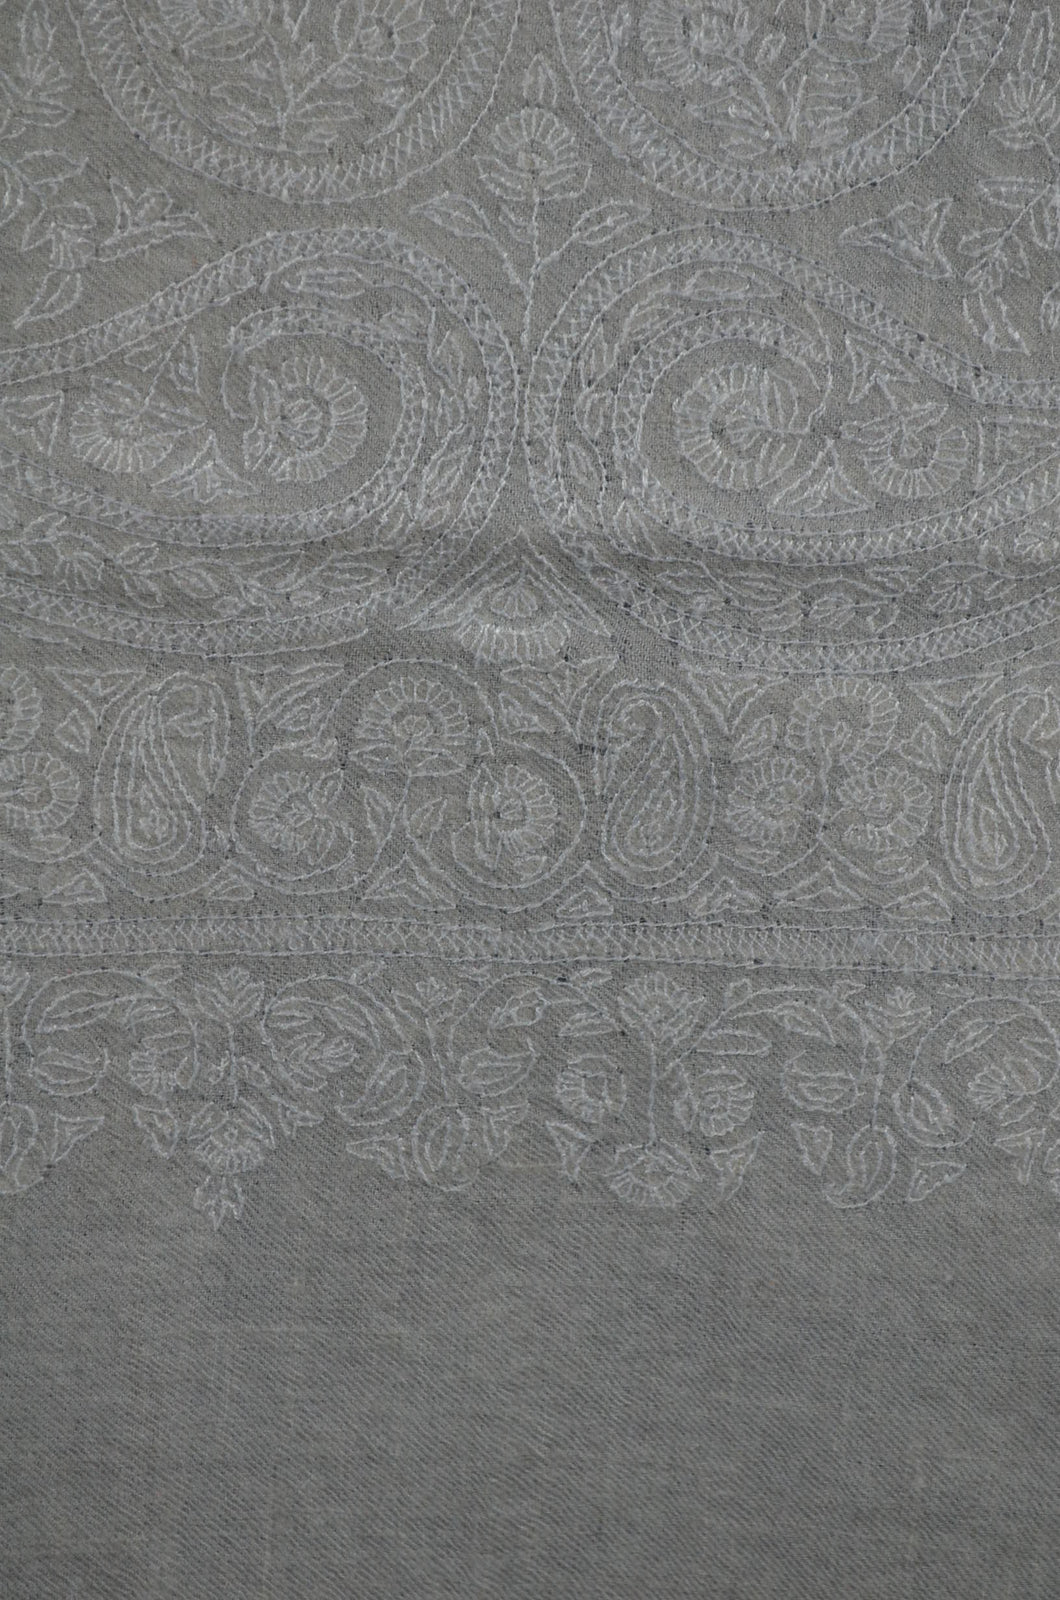 Ivory Base Jamawar White Embroidery Cashmere Pashmina Shawl